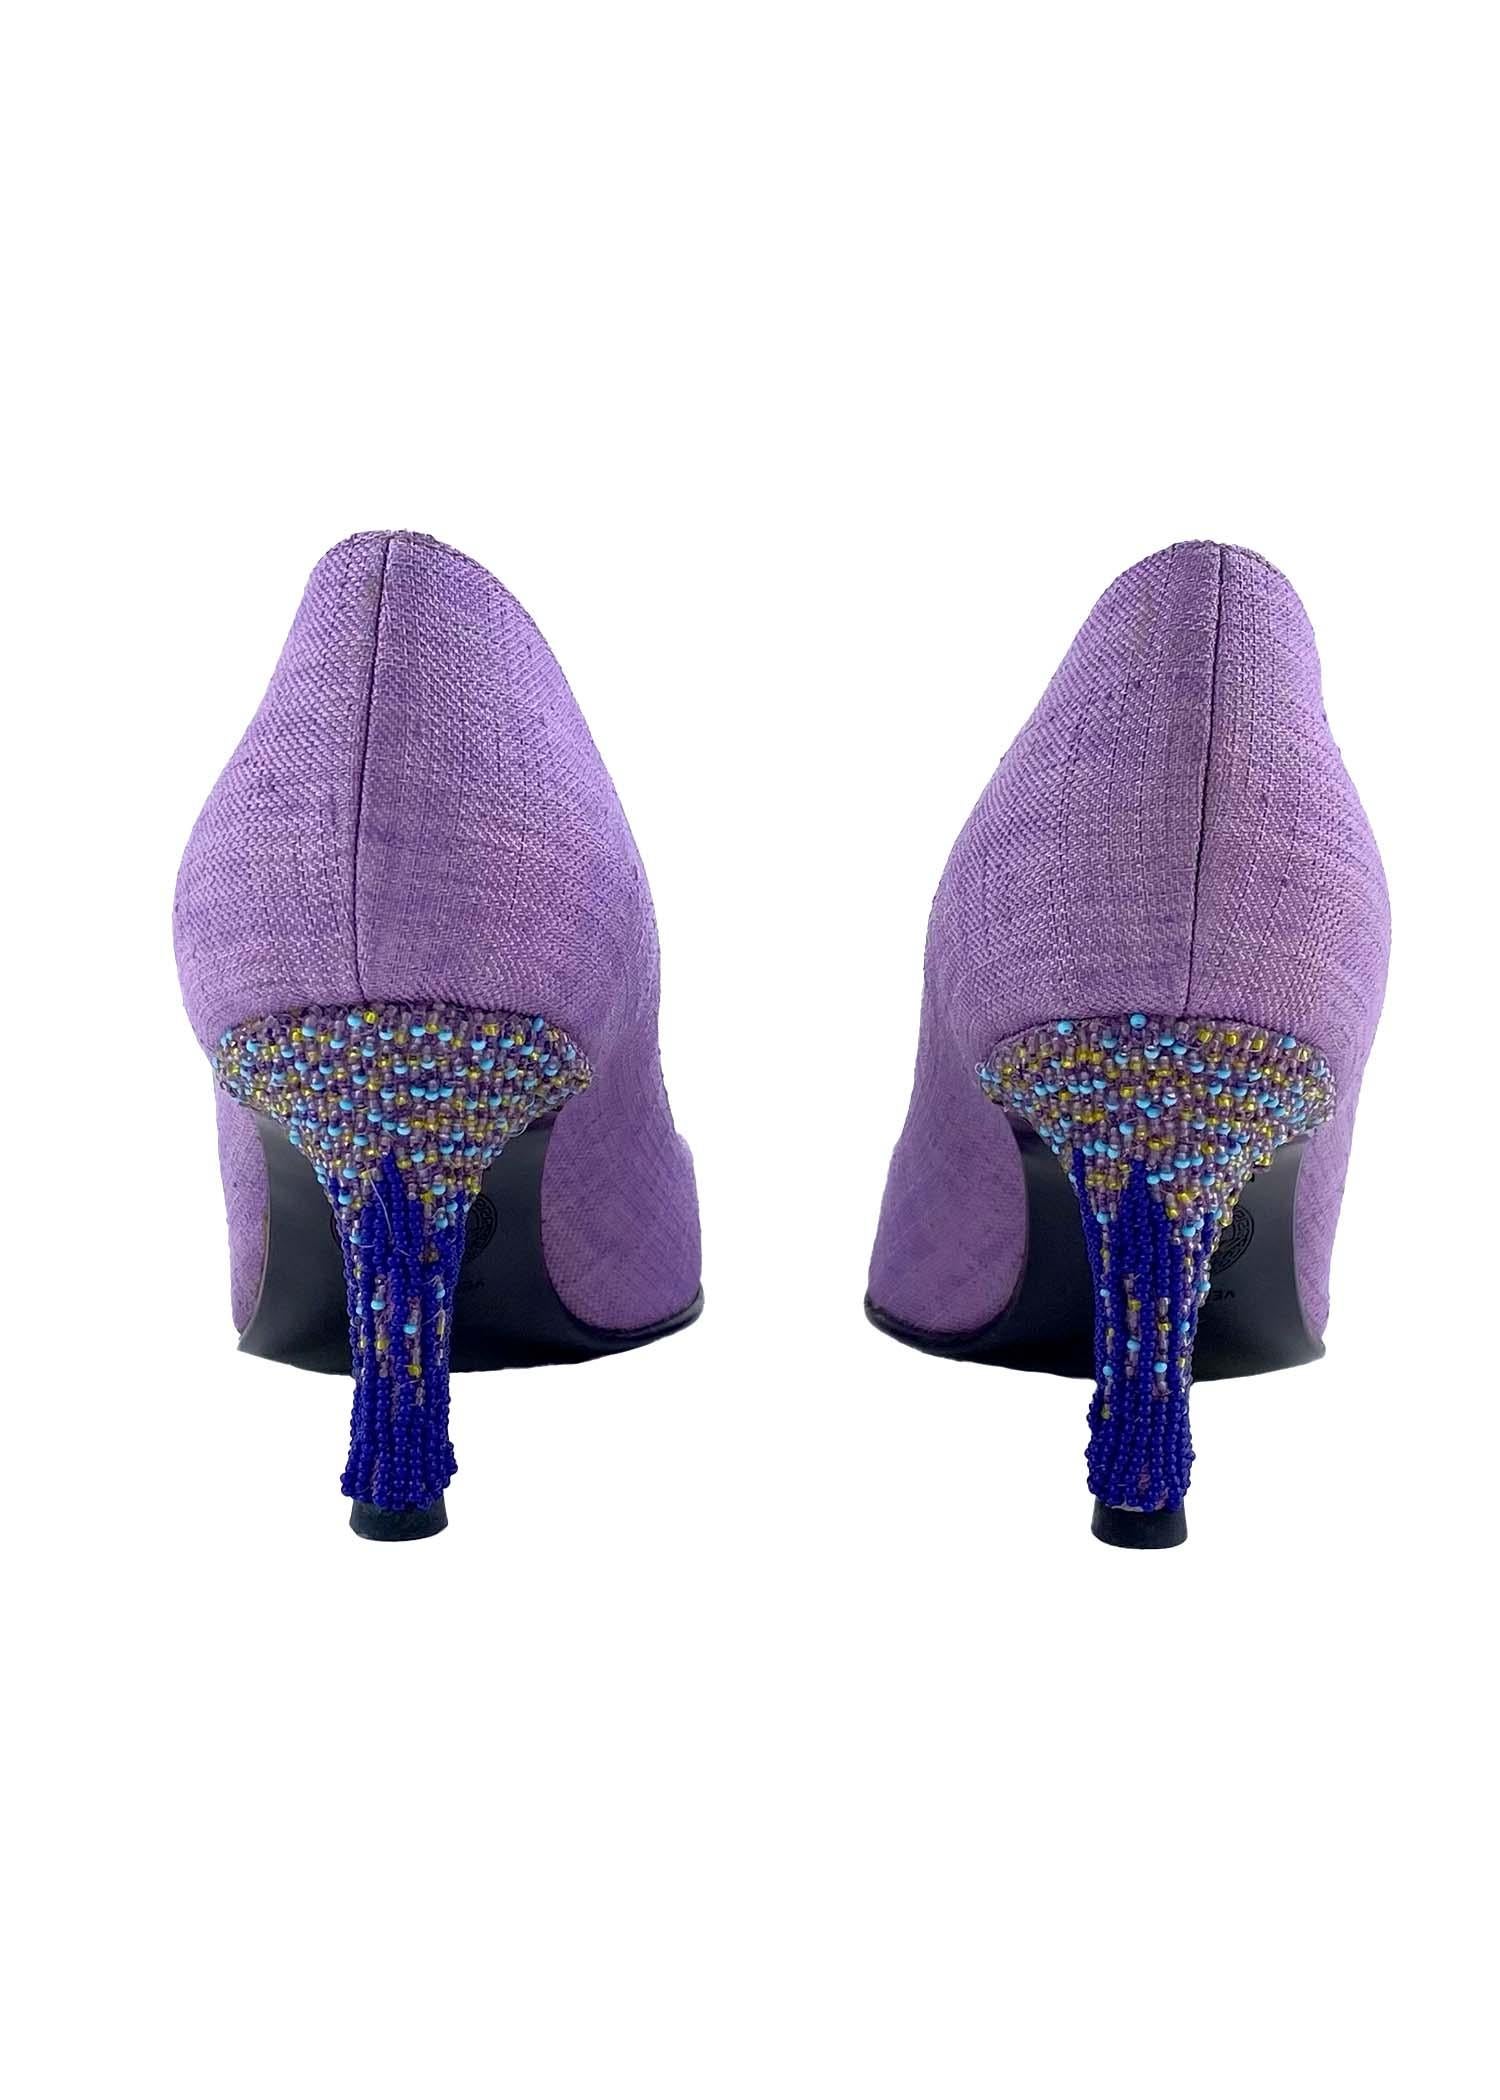 Voici un escarpin Versace en lin violet à talon perlé, imaginé par Donatella Versace. Cette paire de chaussures à talons est fabriquée principalement en lin lilas et présente un talon fortement perlé. Tout simplement magnifiques, ces chaussures sont